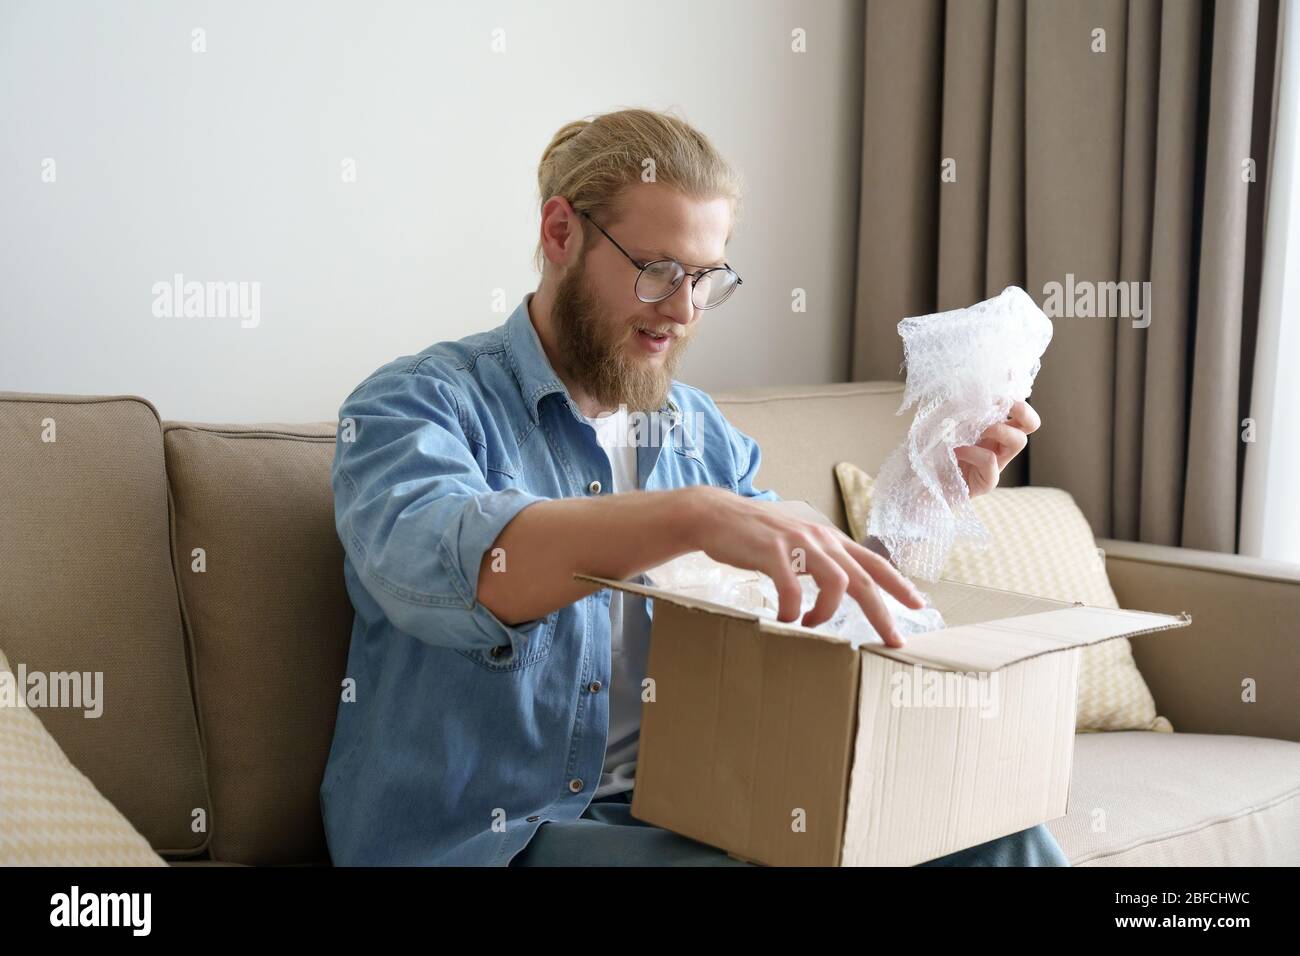 Happy man Kunde öffnen Karton Auspacken Post-Mail-Lieferpaket. Stockfoto